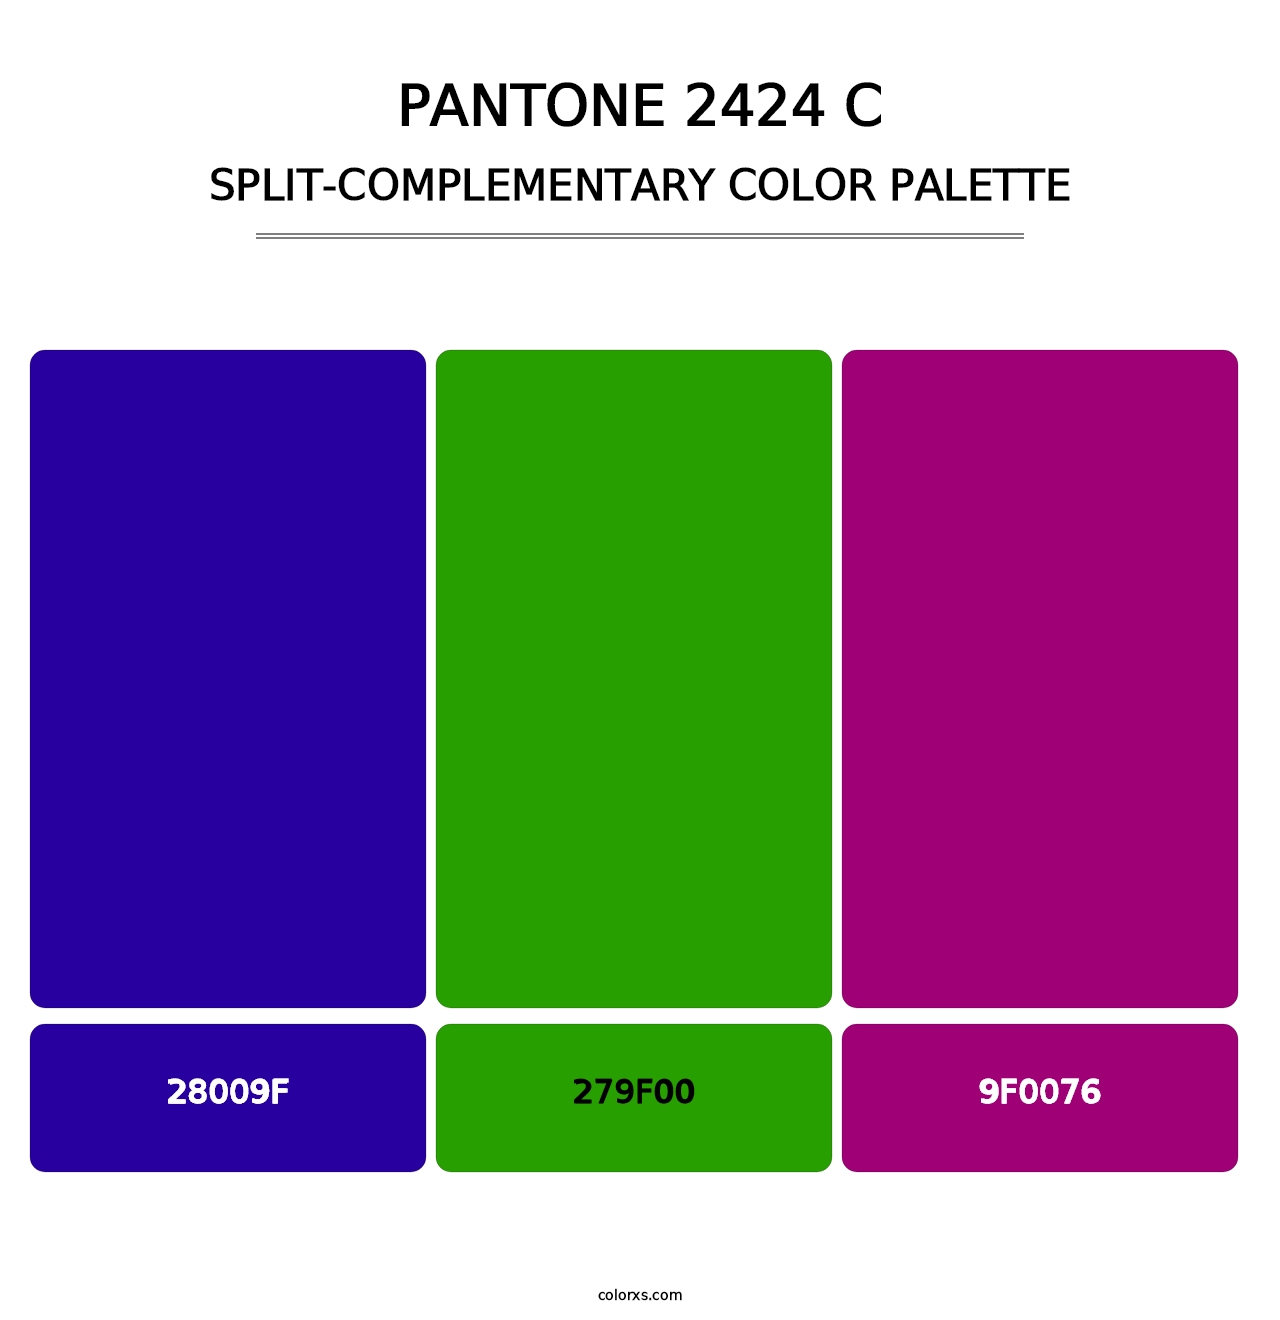 PANTONE 2424 C - Split-Complementary Color Palette